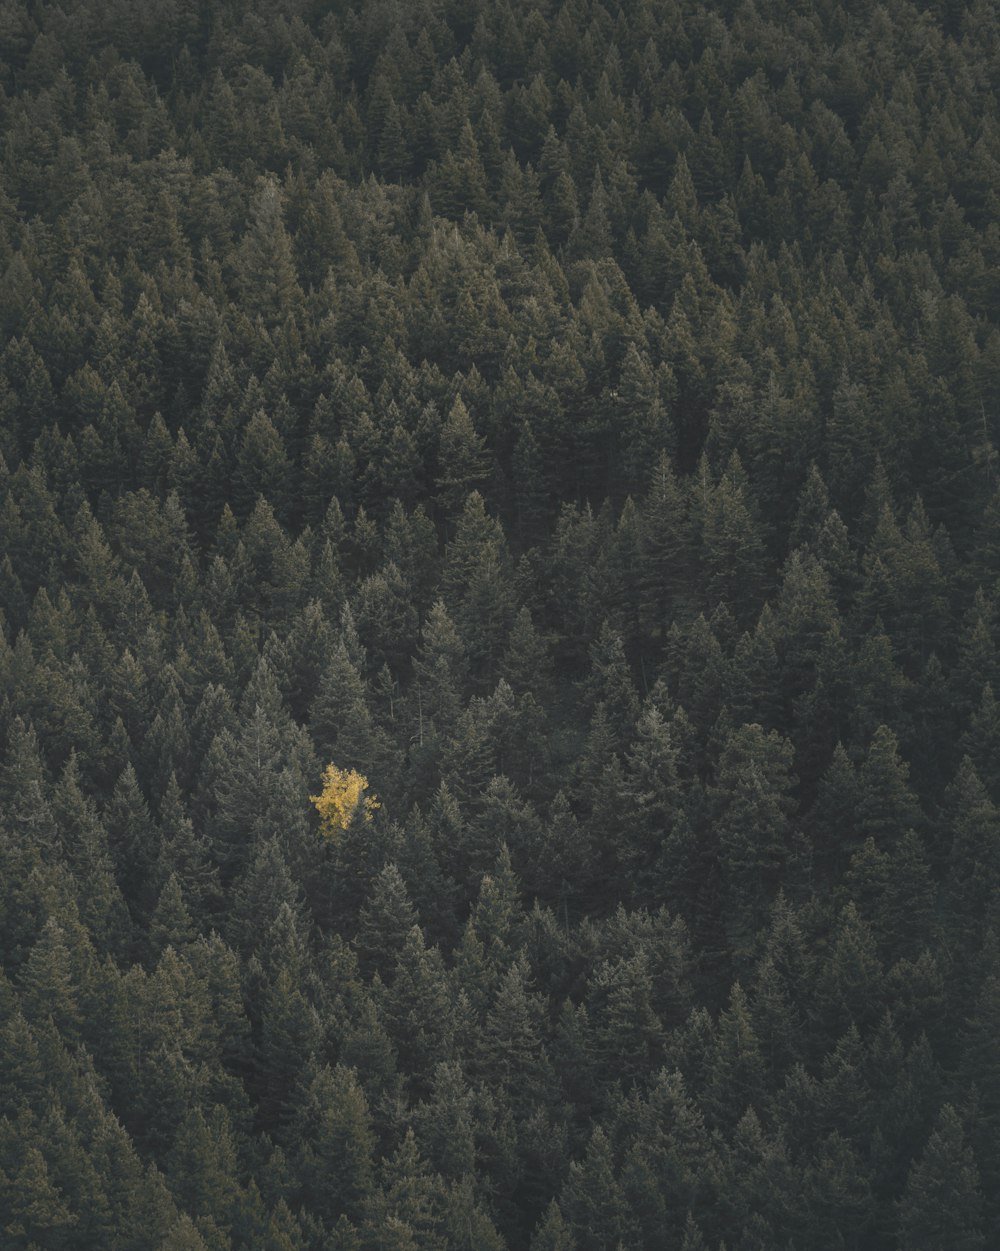 Landschaftsfotografie des Waldes